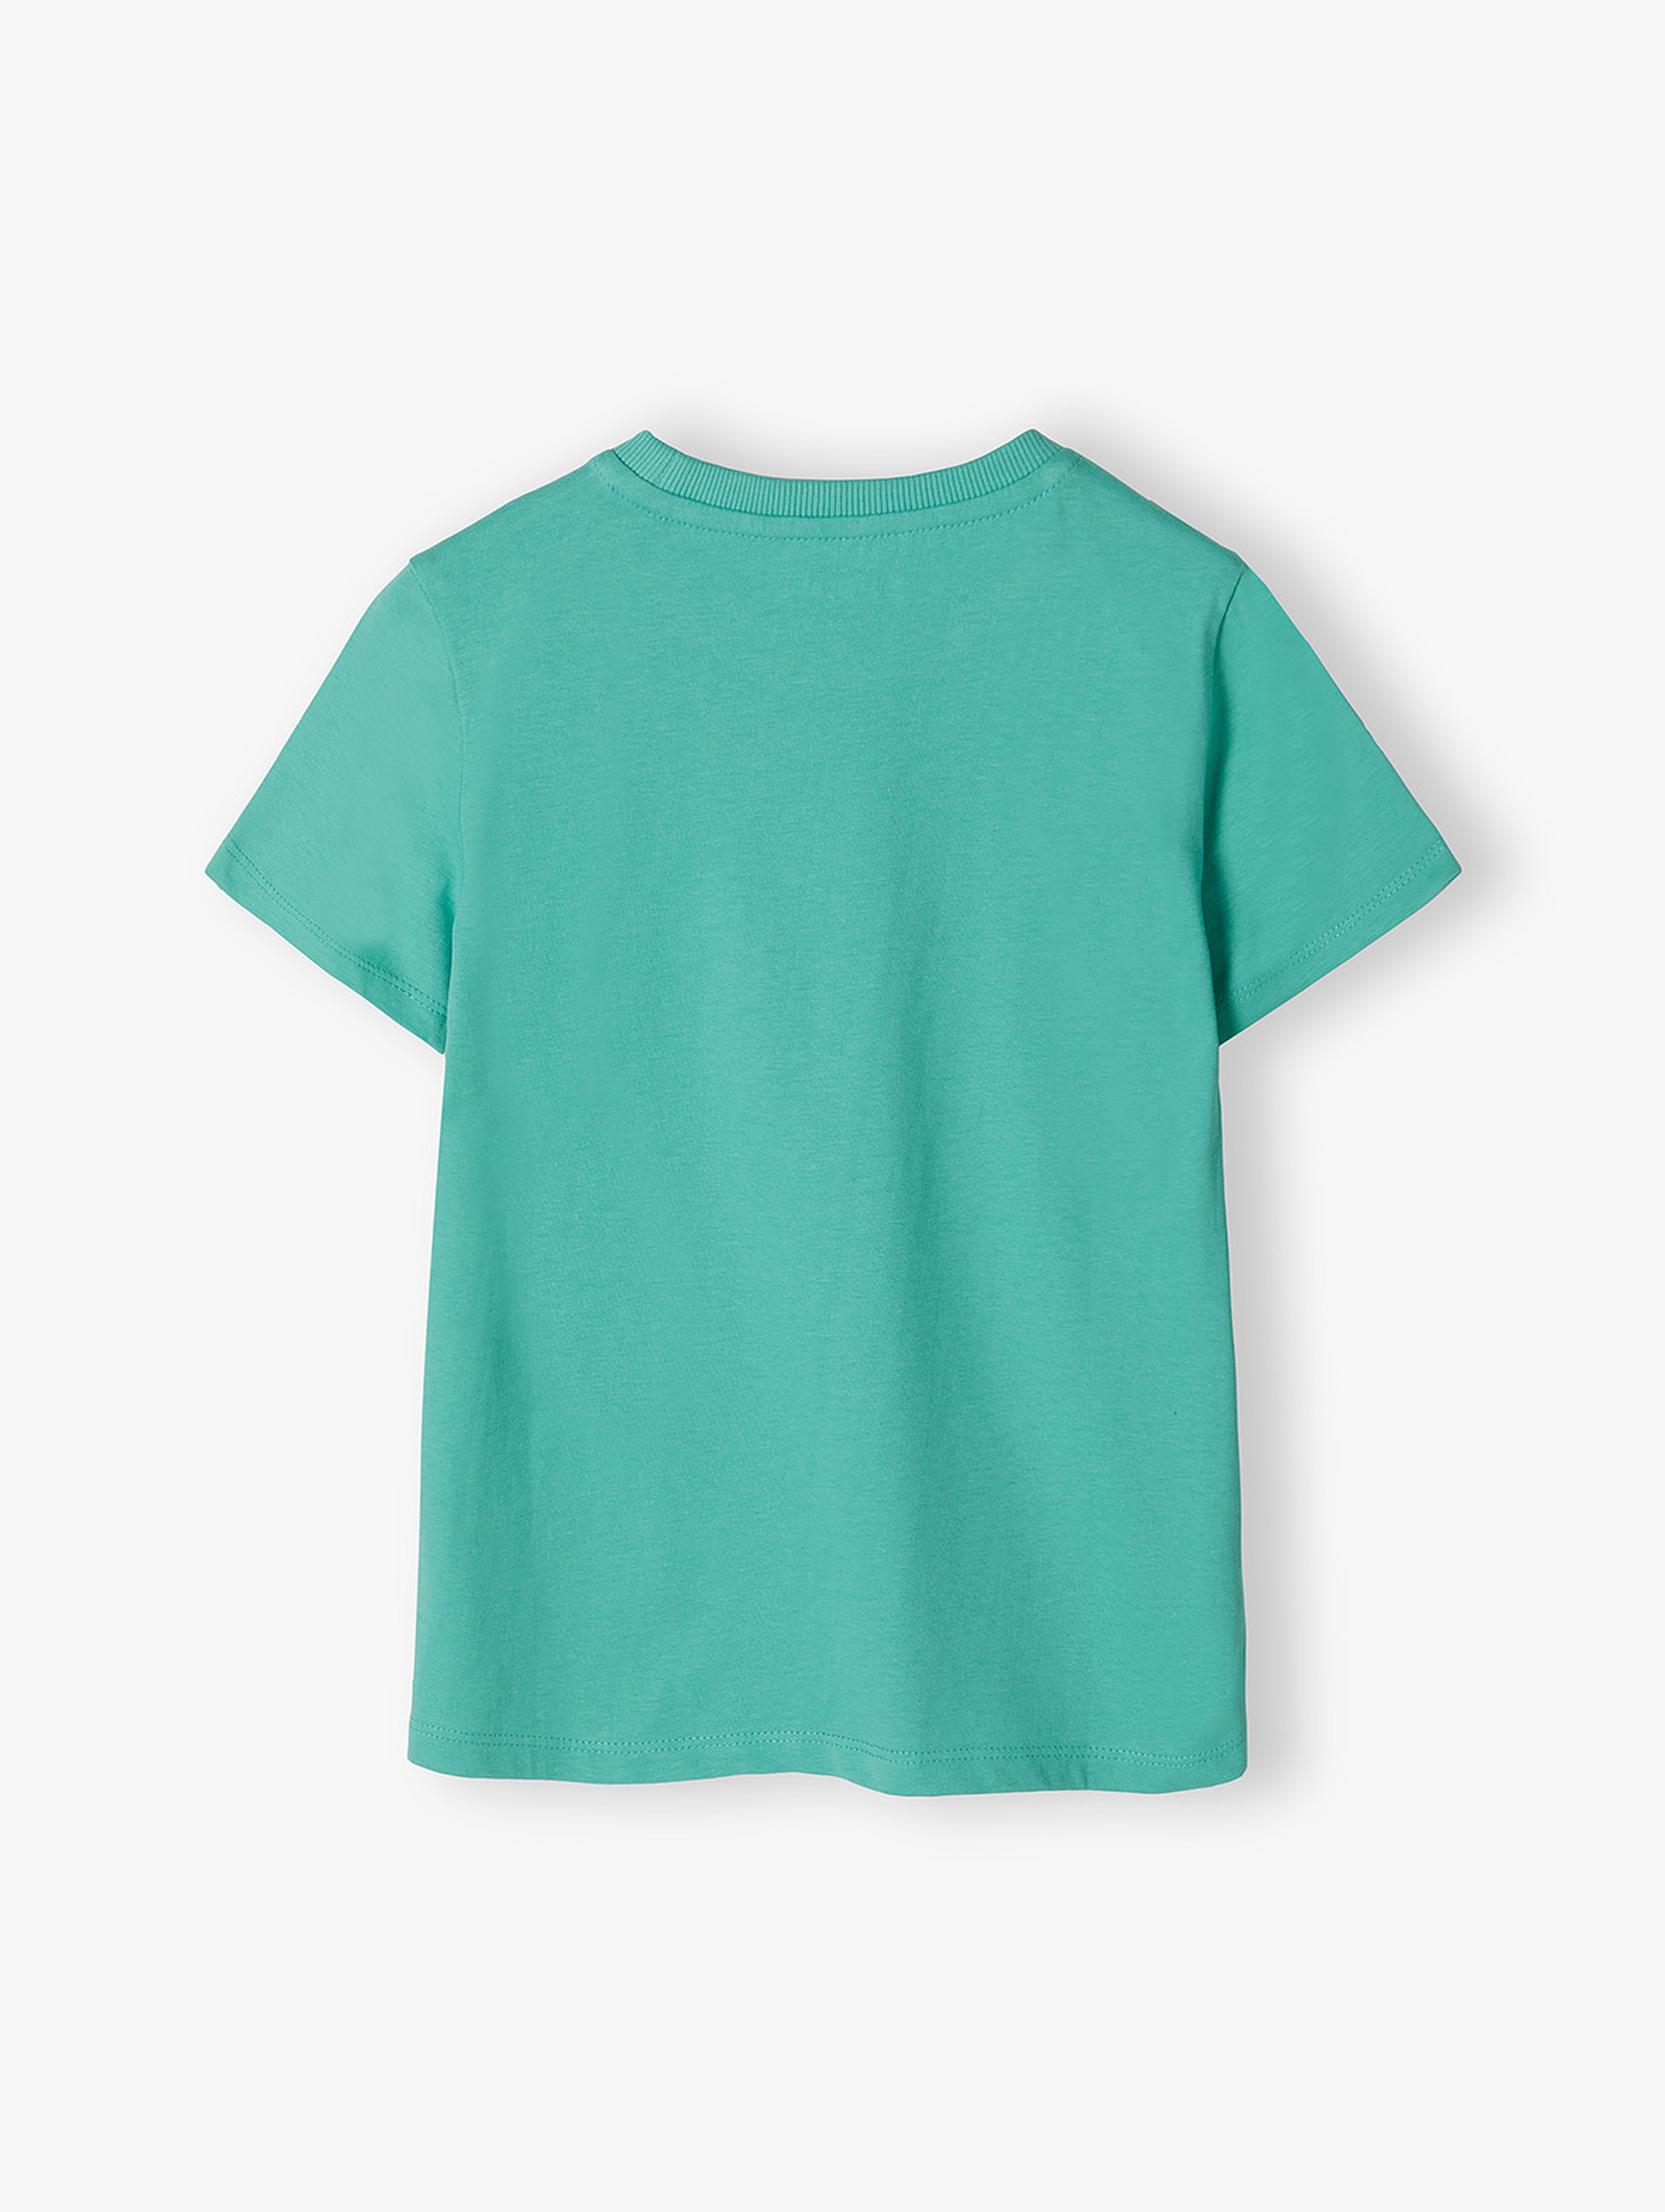 Zielony t-shirt dla chłopca bawełniany z nadrukiem